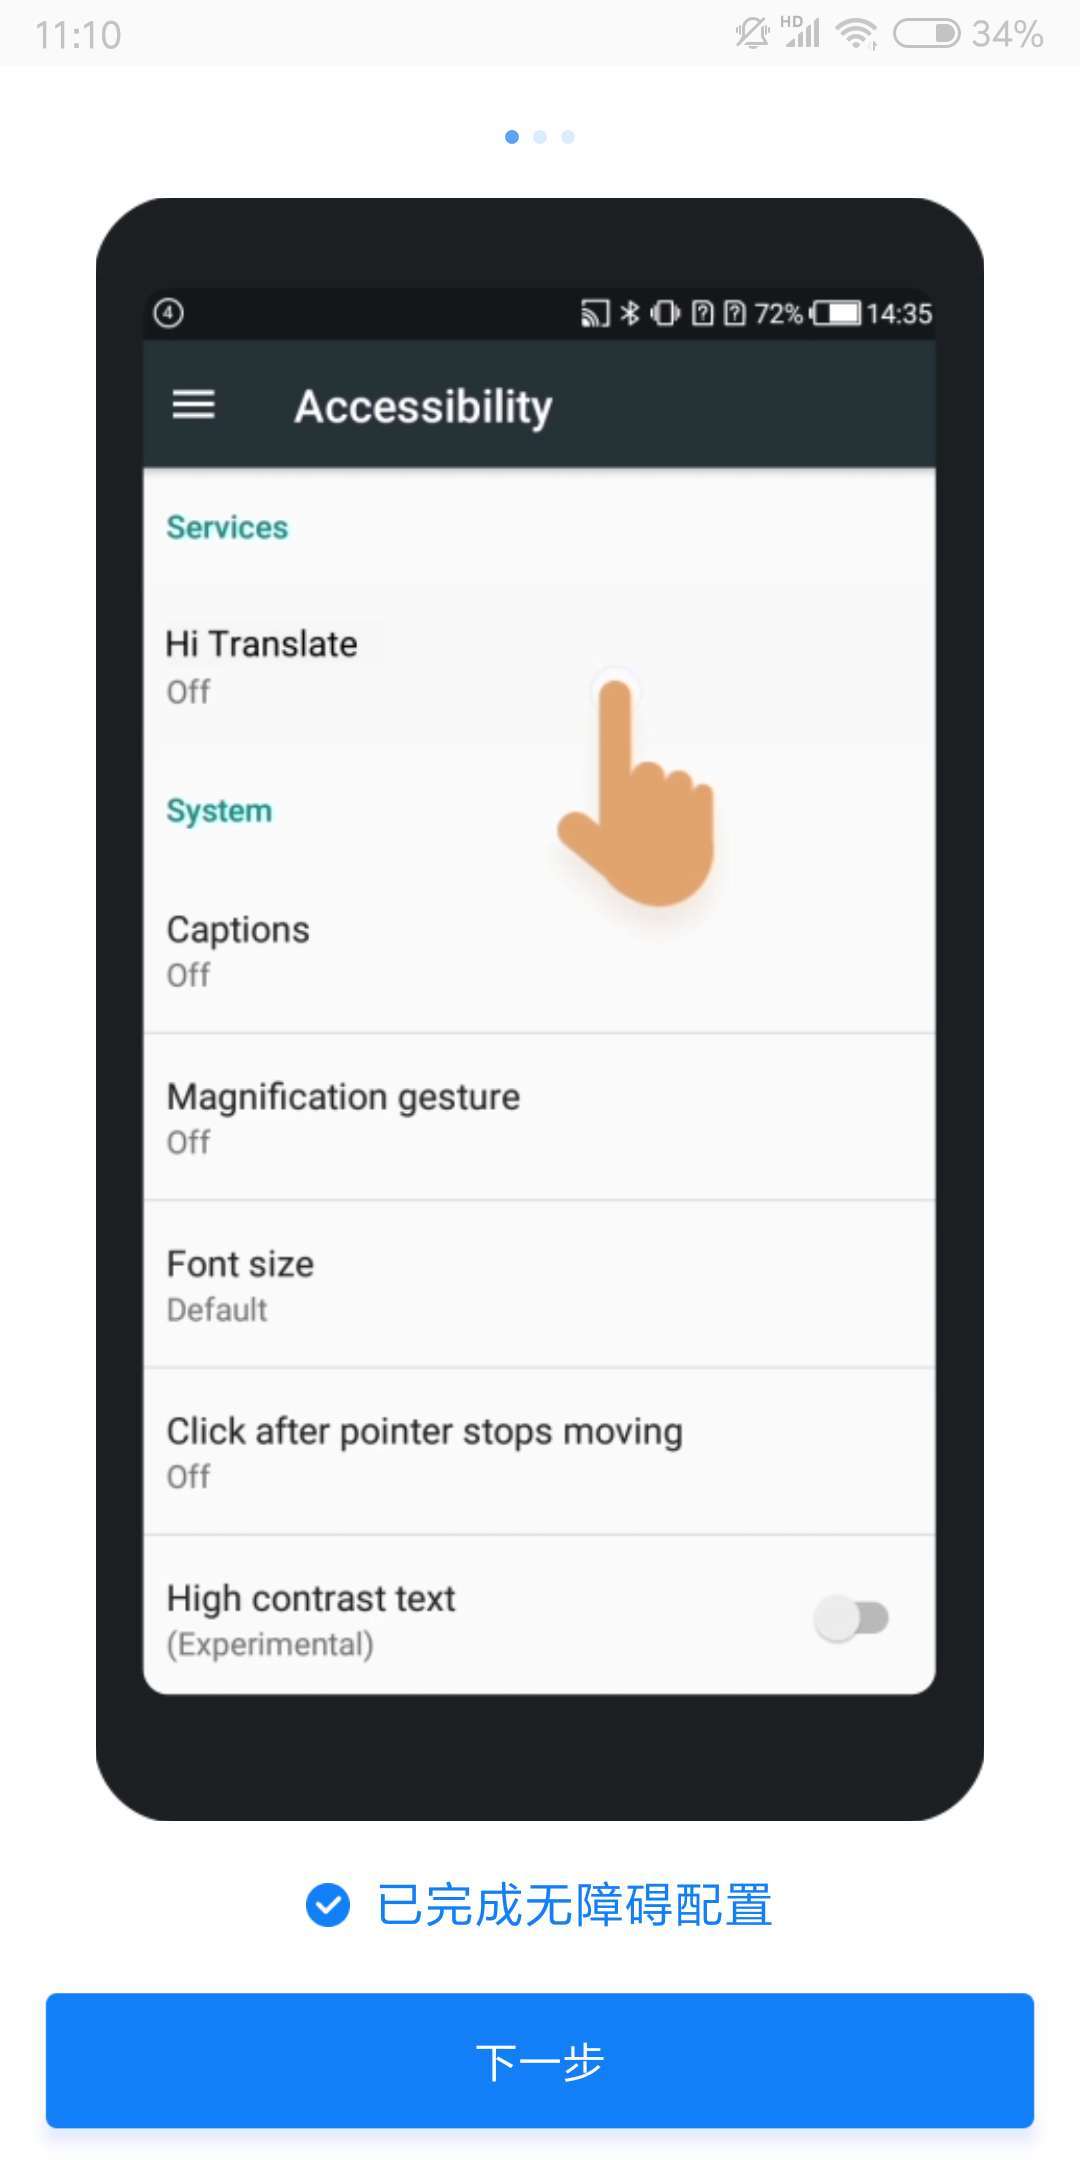 能一键翻译 App 中的外文，最强大的翻译软件非它莫属了